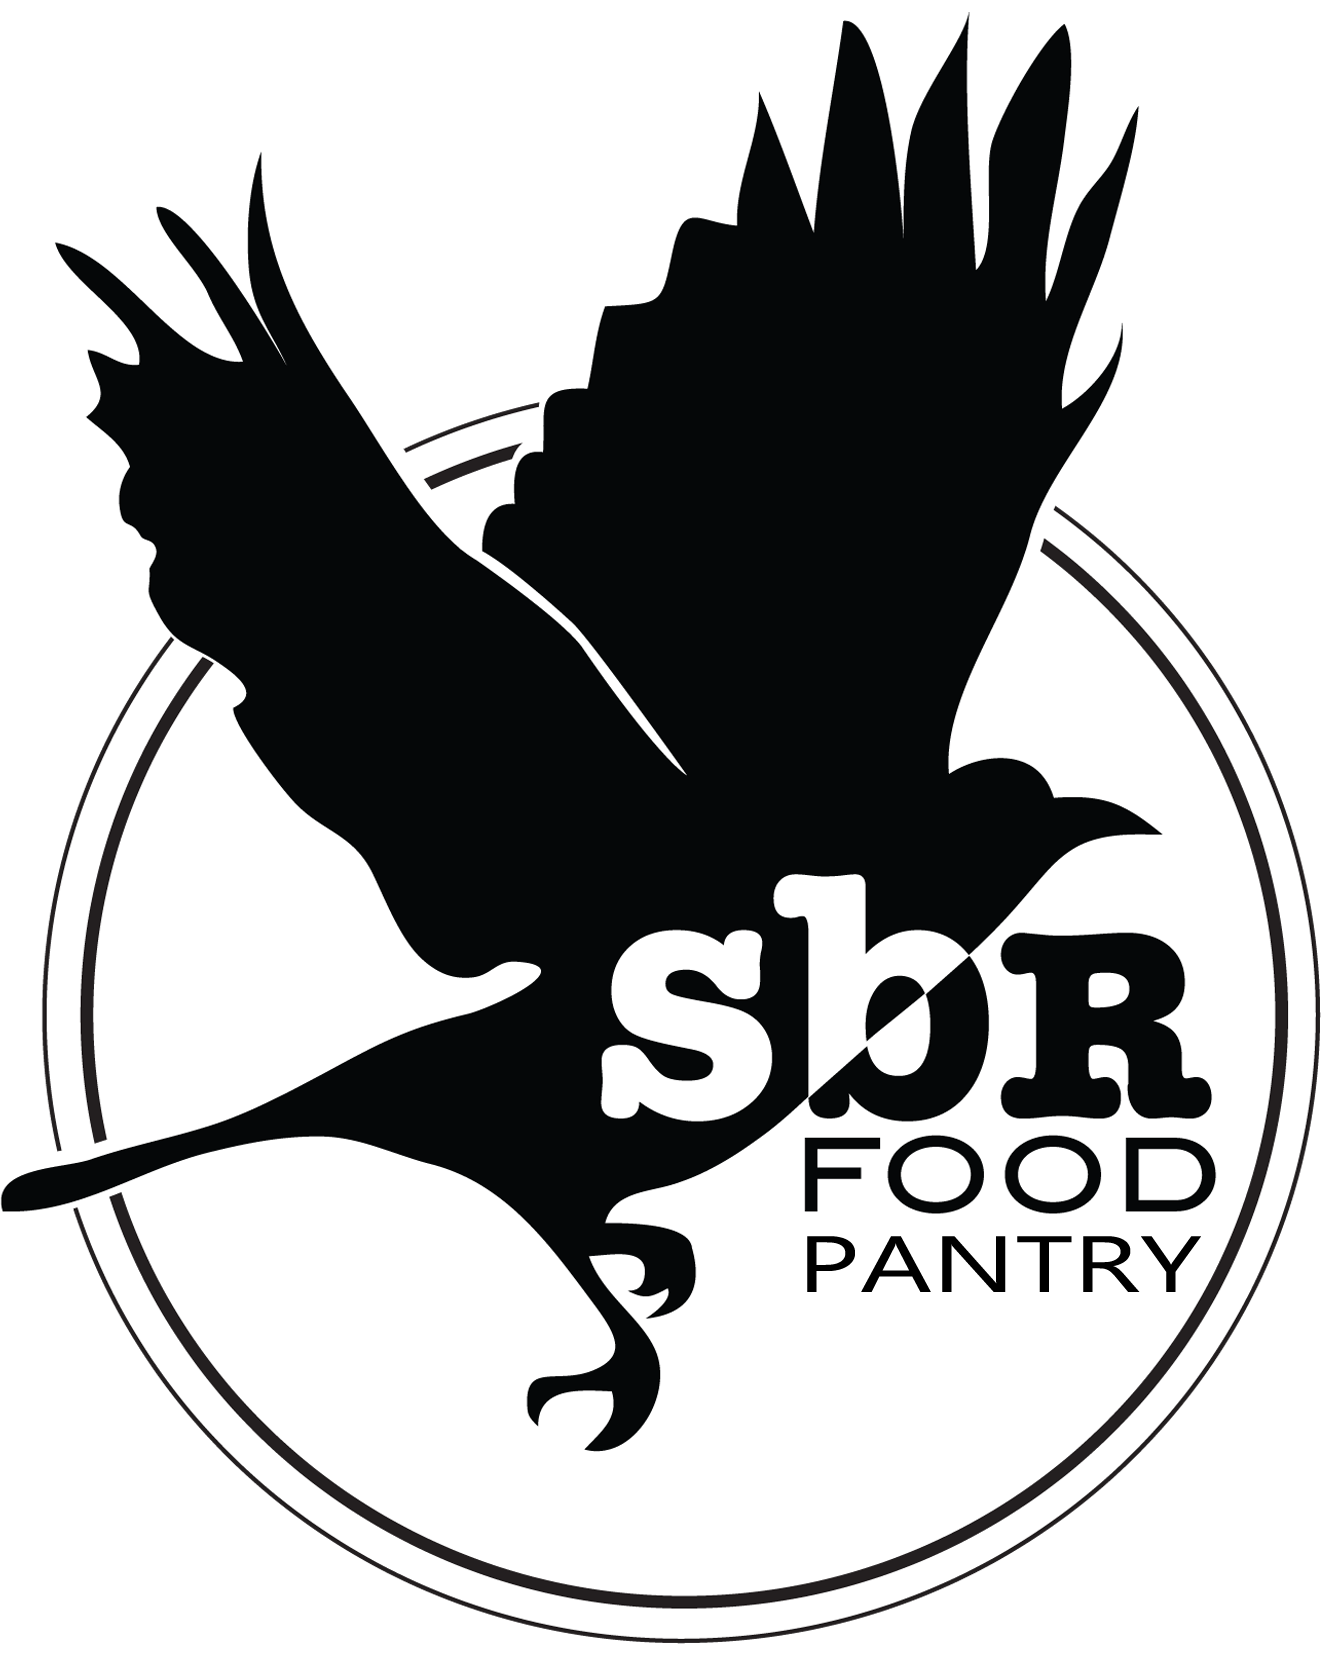 SENT BY RAVENS, (SBR) FOOD PANTRY